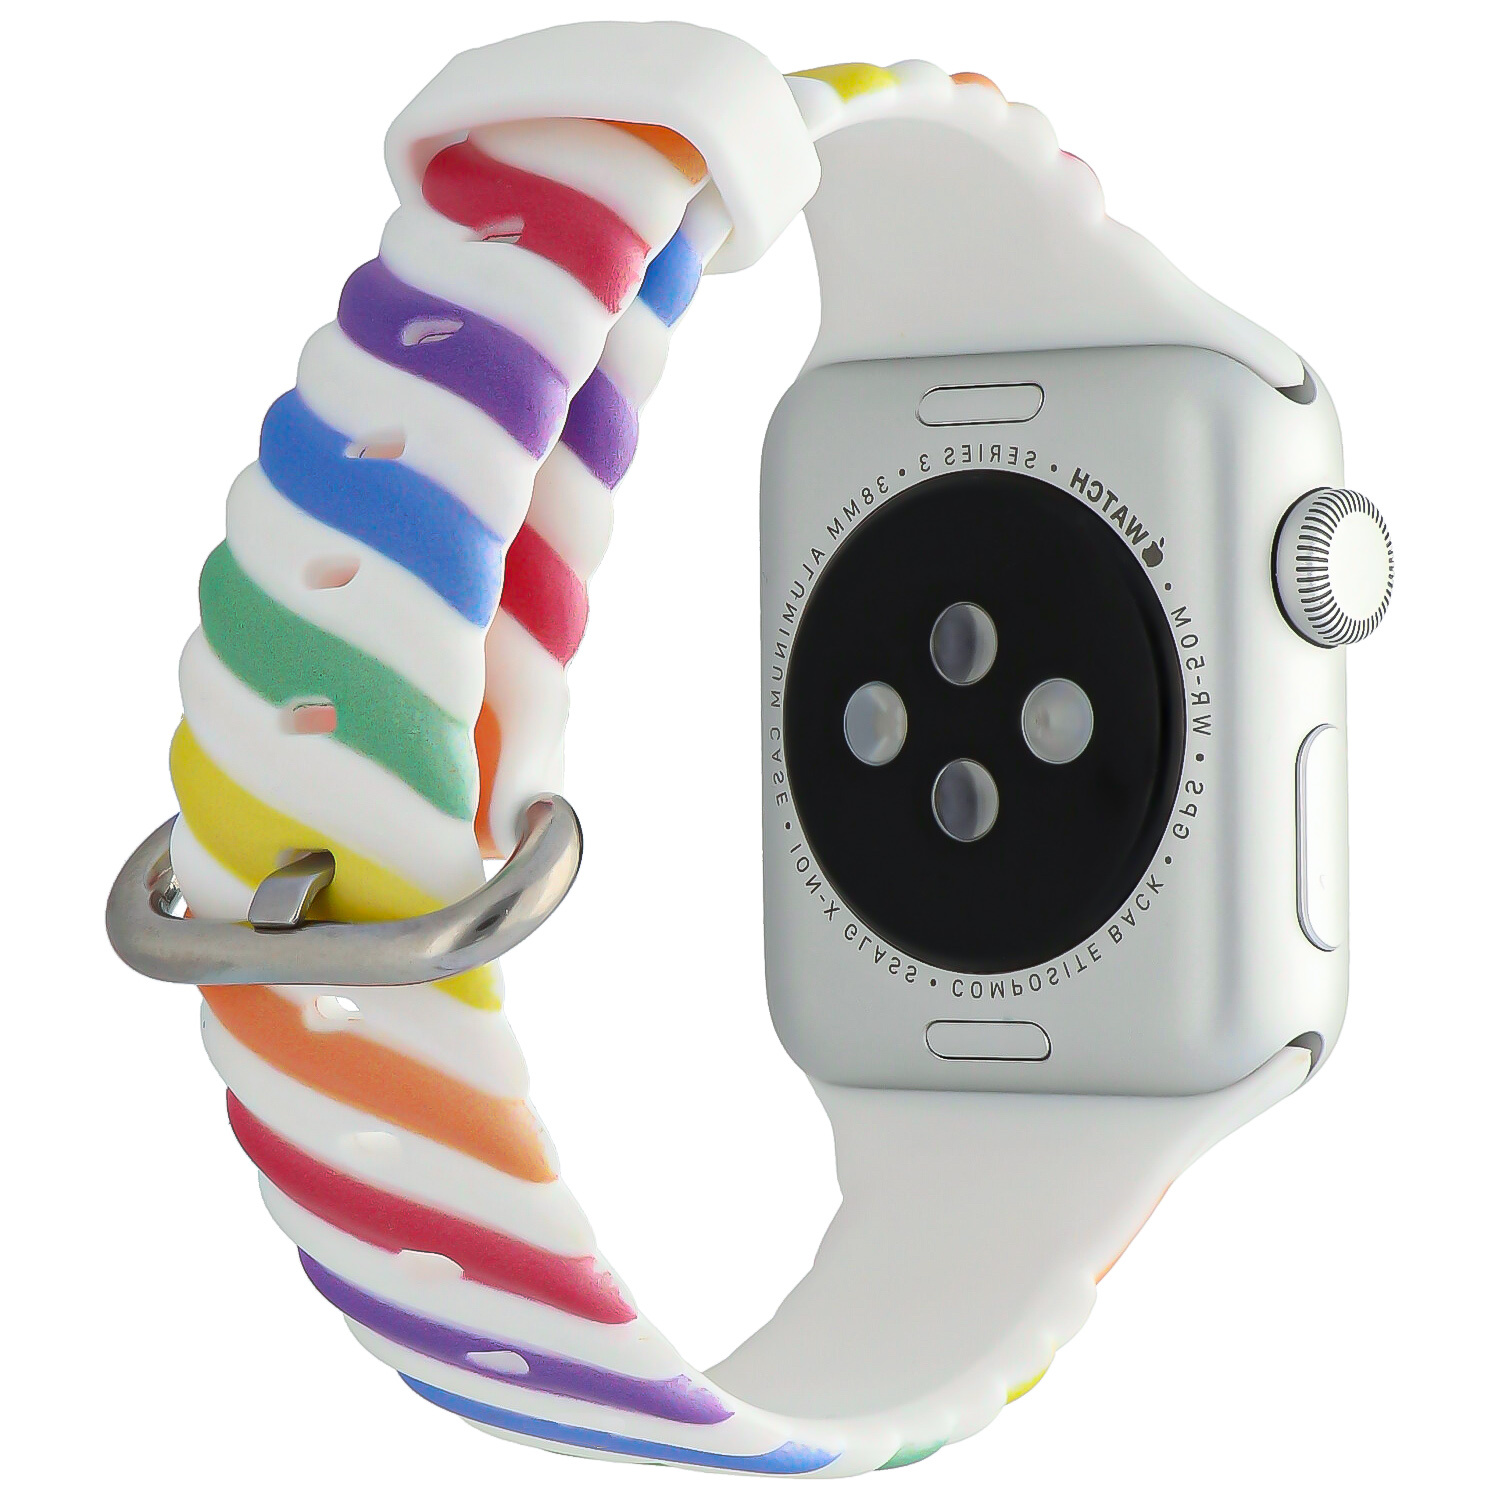 Cinturino sport swirl per Apple Watch - bianco colorato